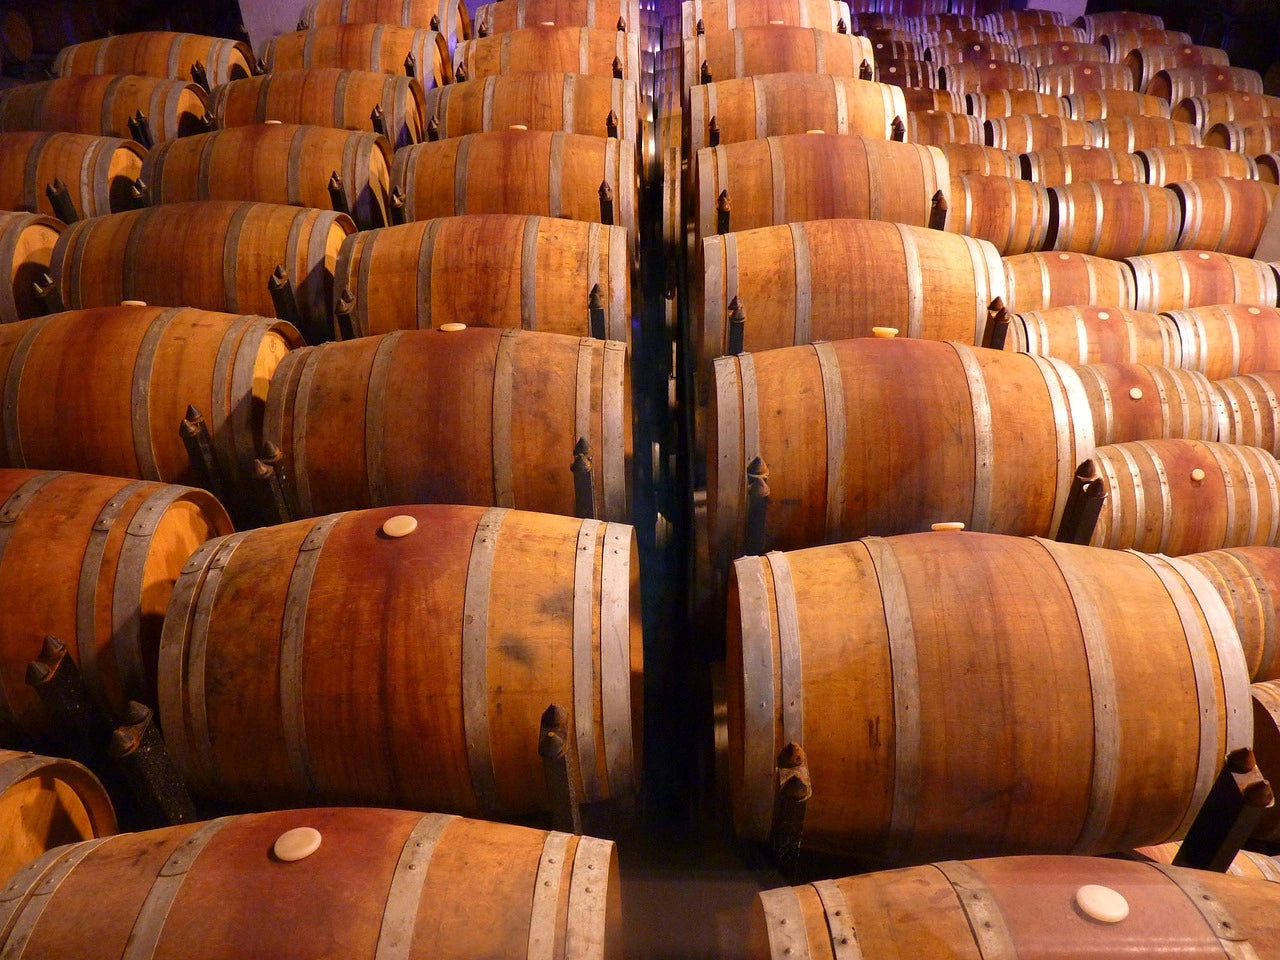 Wunderbare Welt der Whisky mit Weinfass-Reifung